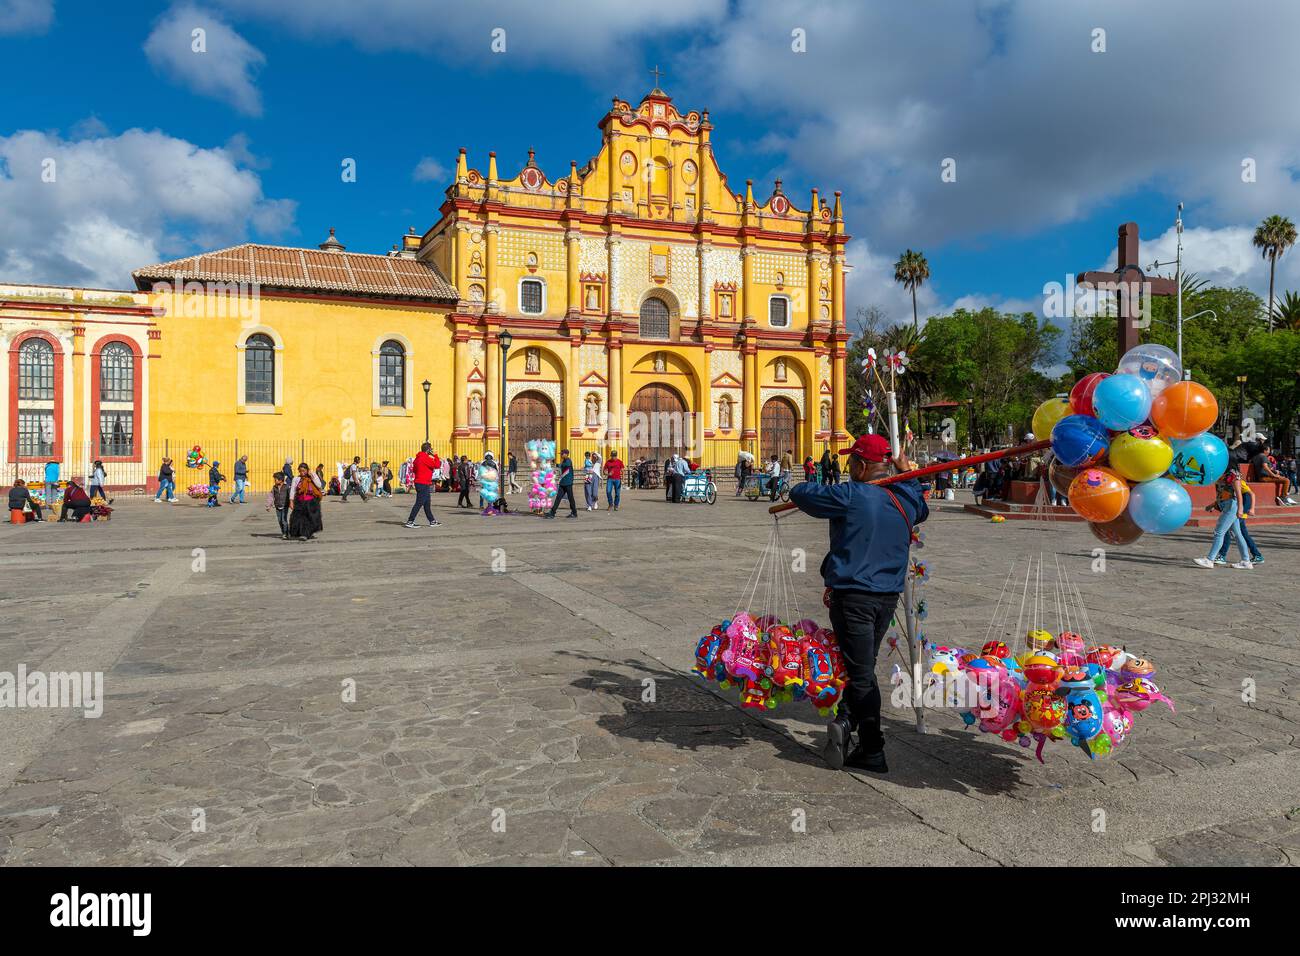 Balloon seller in San Cristobal de las Casas and Cathedral, Chiapas, Mexico. Stock Photo